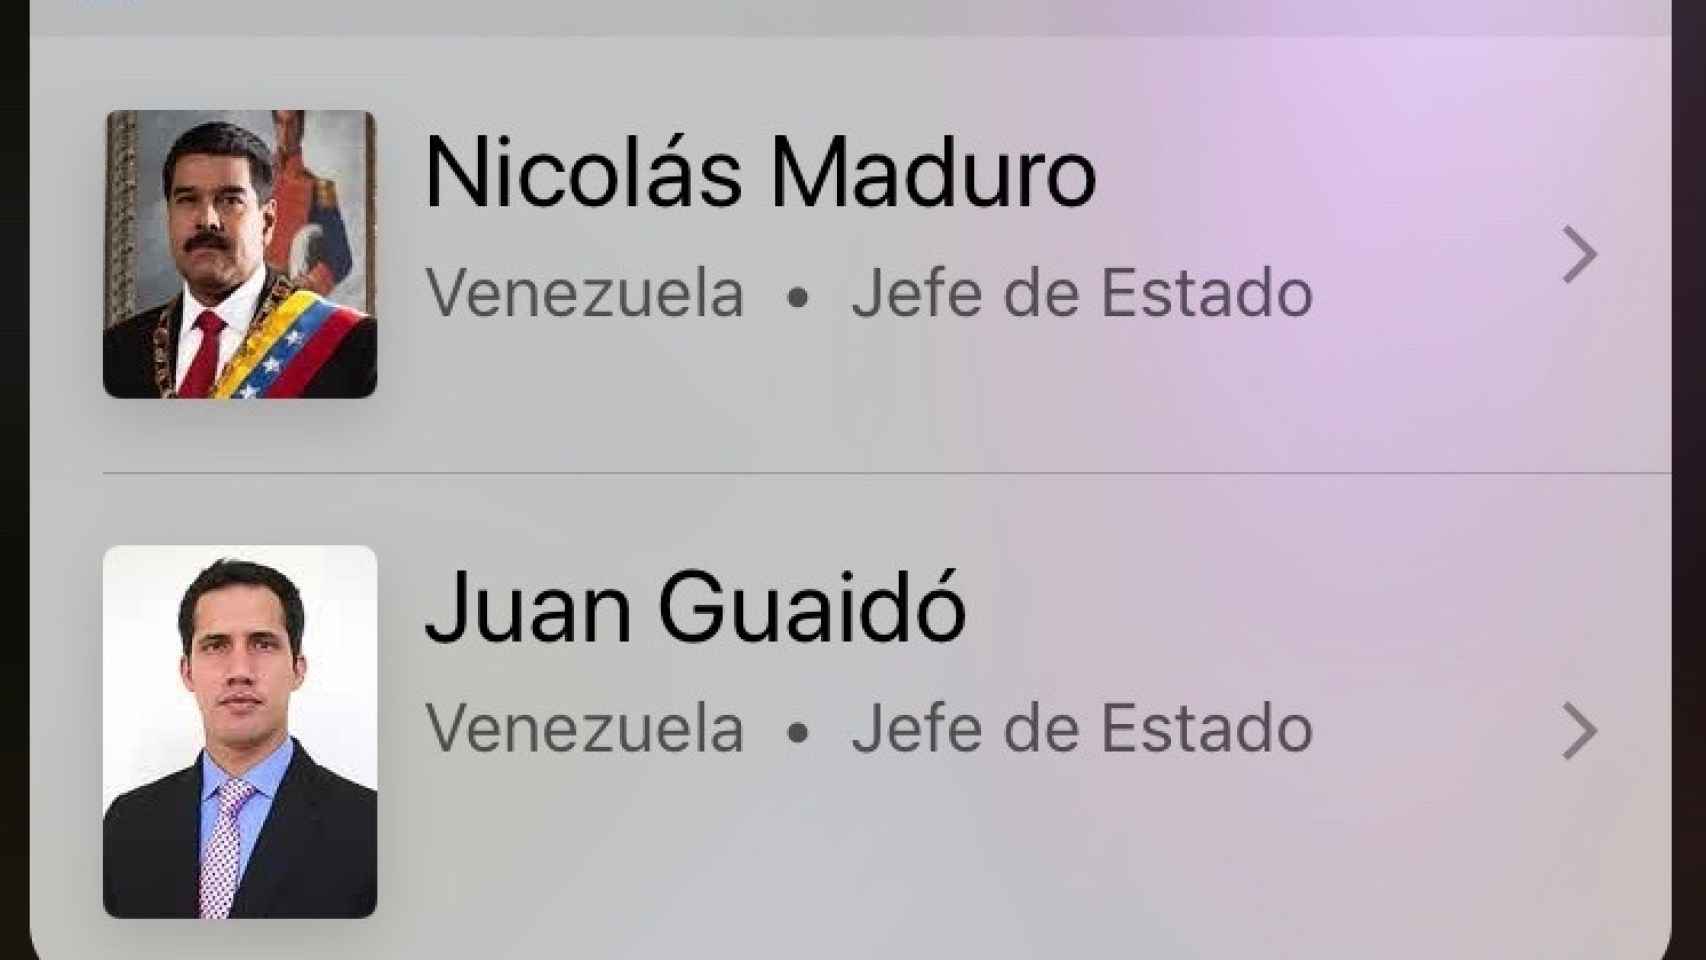 Siri, ¿quién es el presidente de Venezuela? El asistente de voz de Apple no toma partido